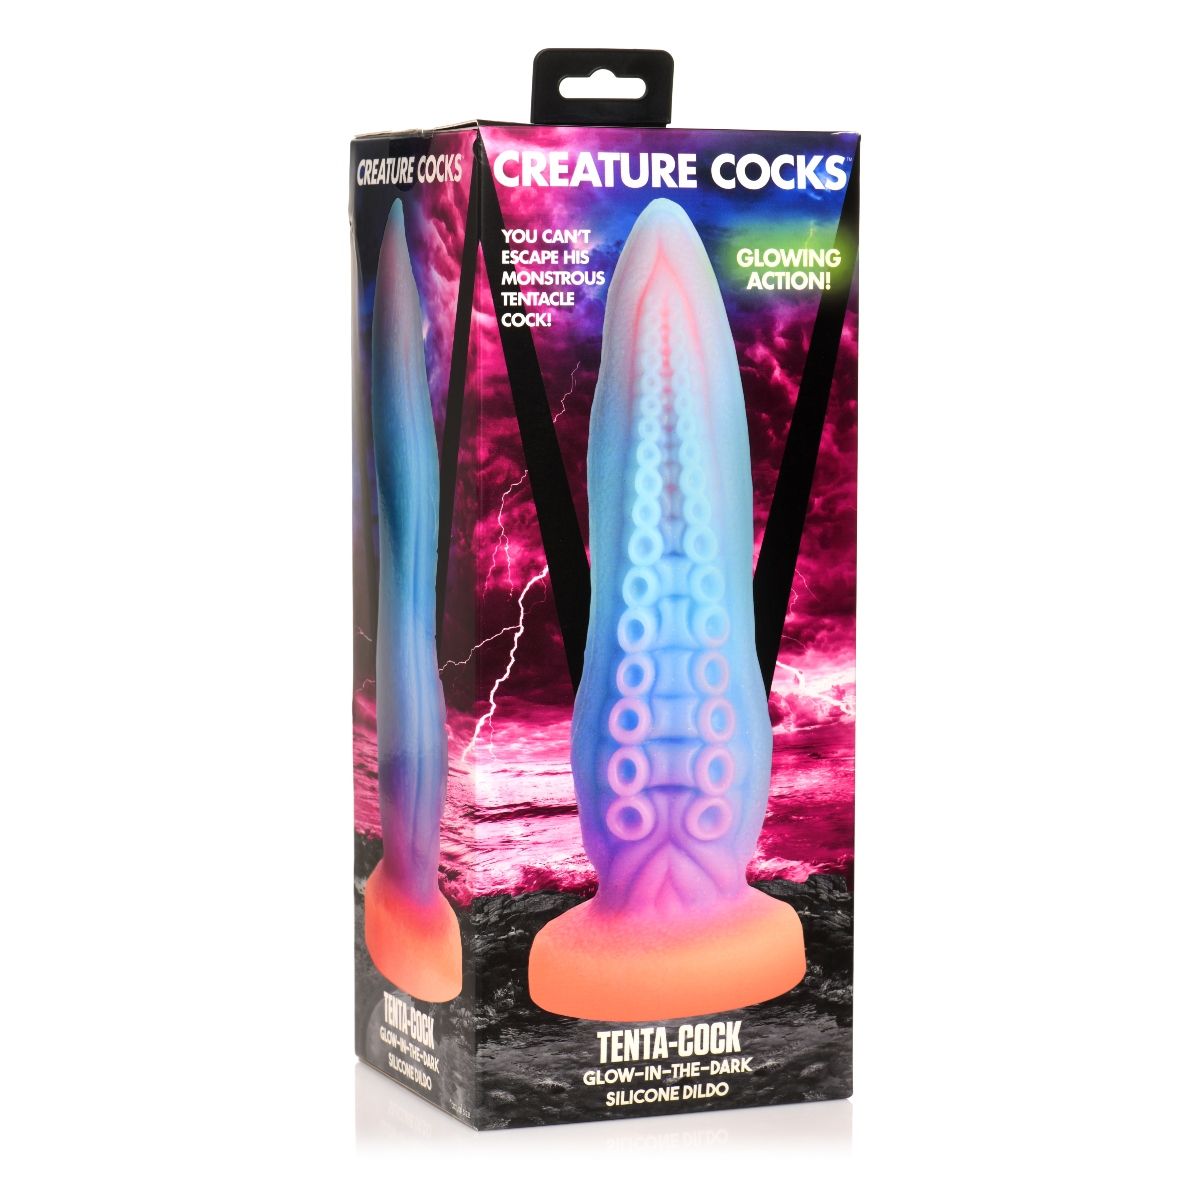 Creature Cocks Tenta-Cock Glow In The Dark Silicone Dildo Blue Pink Purple - Simply Pleasure